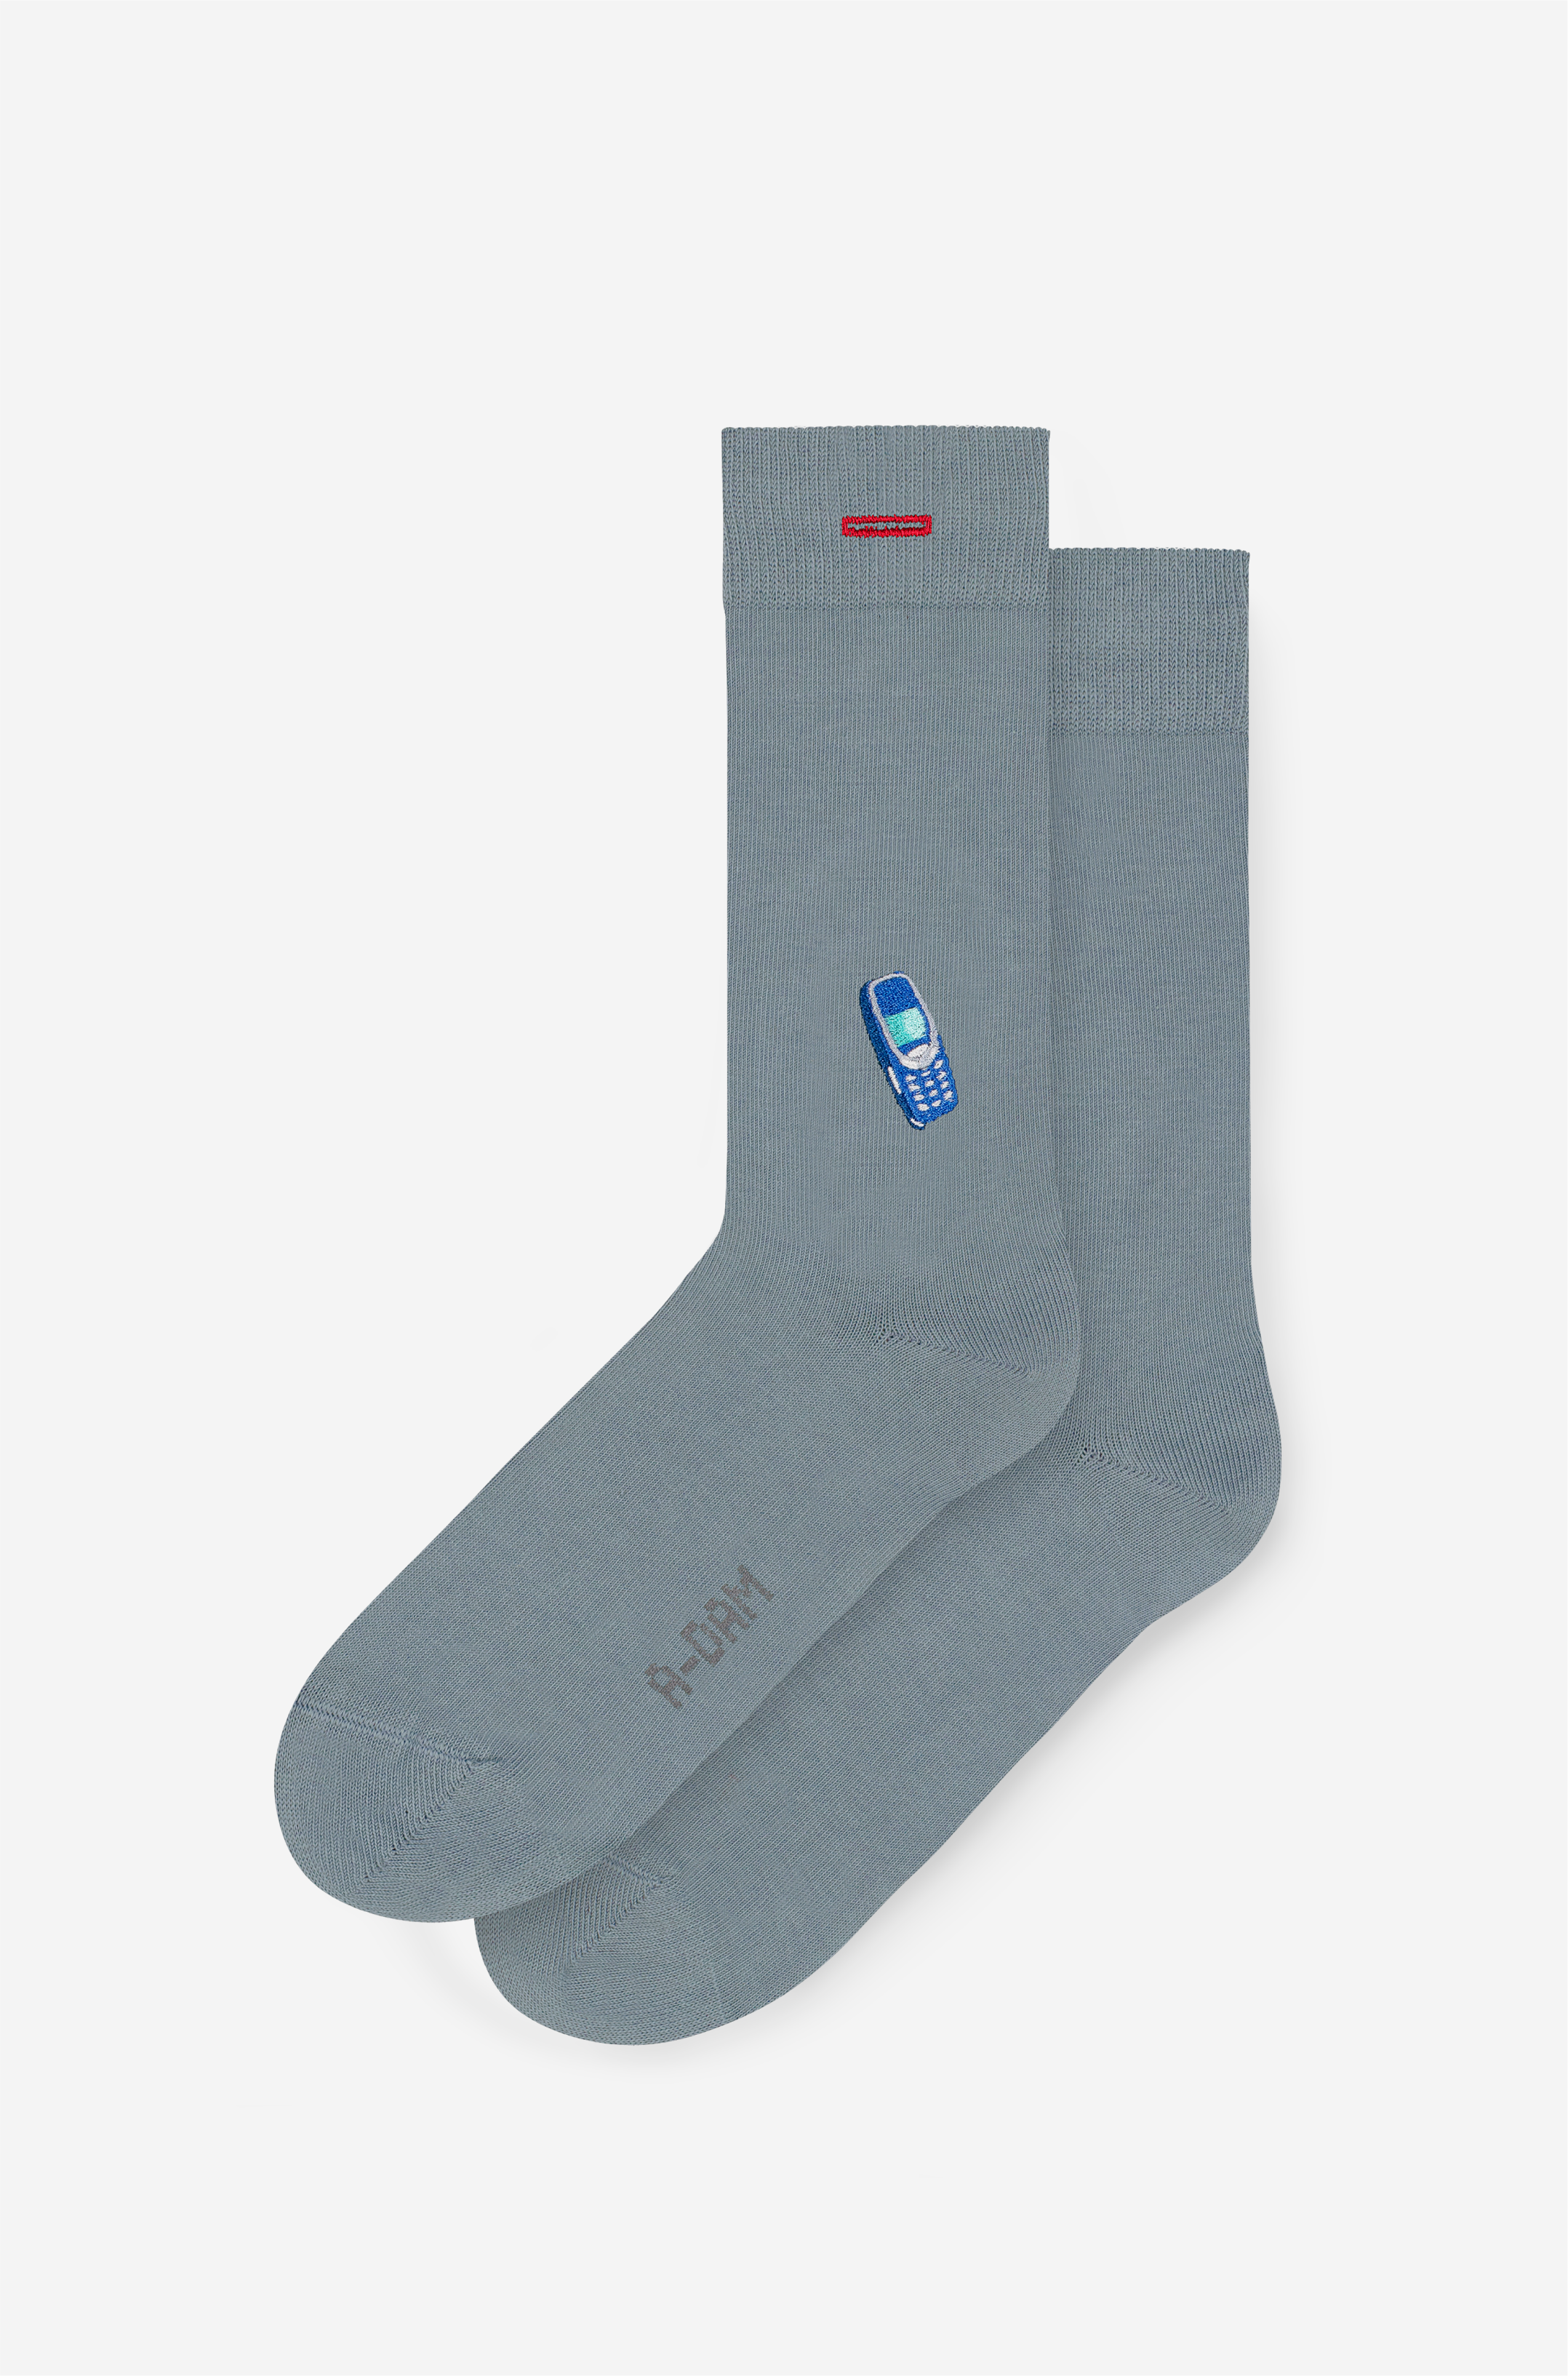 Graue Socken Blue Mobile unisex